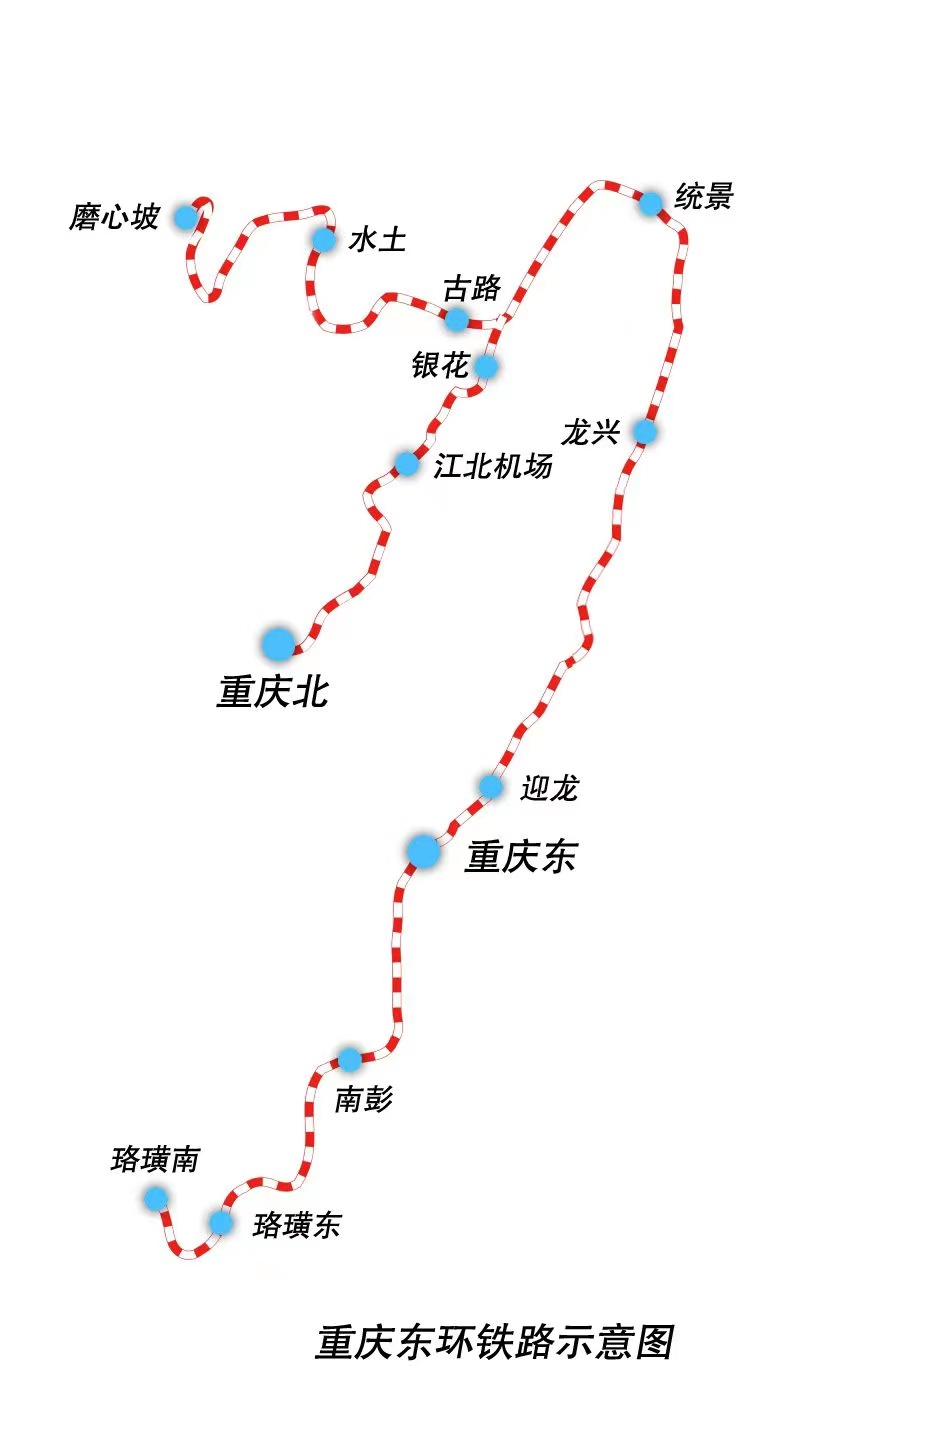 重庆东环铁路12月30日全线开通运营 从重庆北站到江北机场站单程18